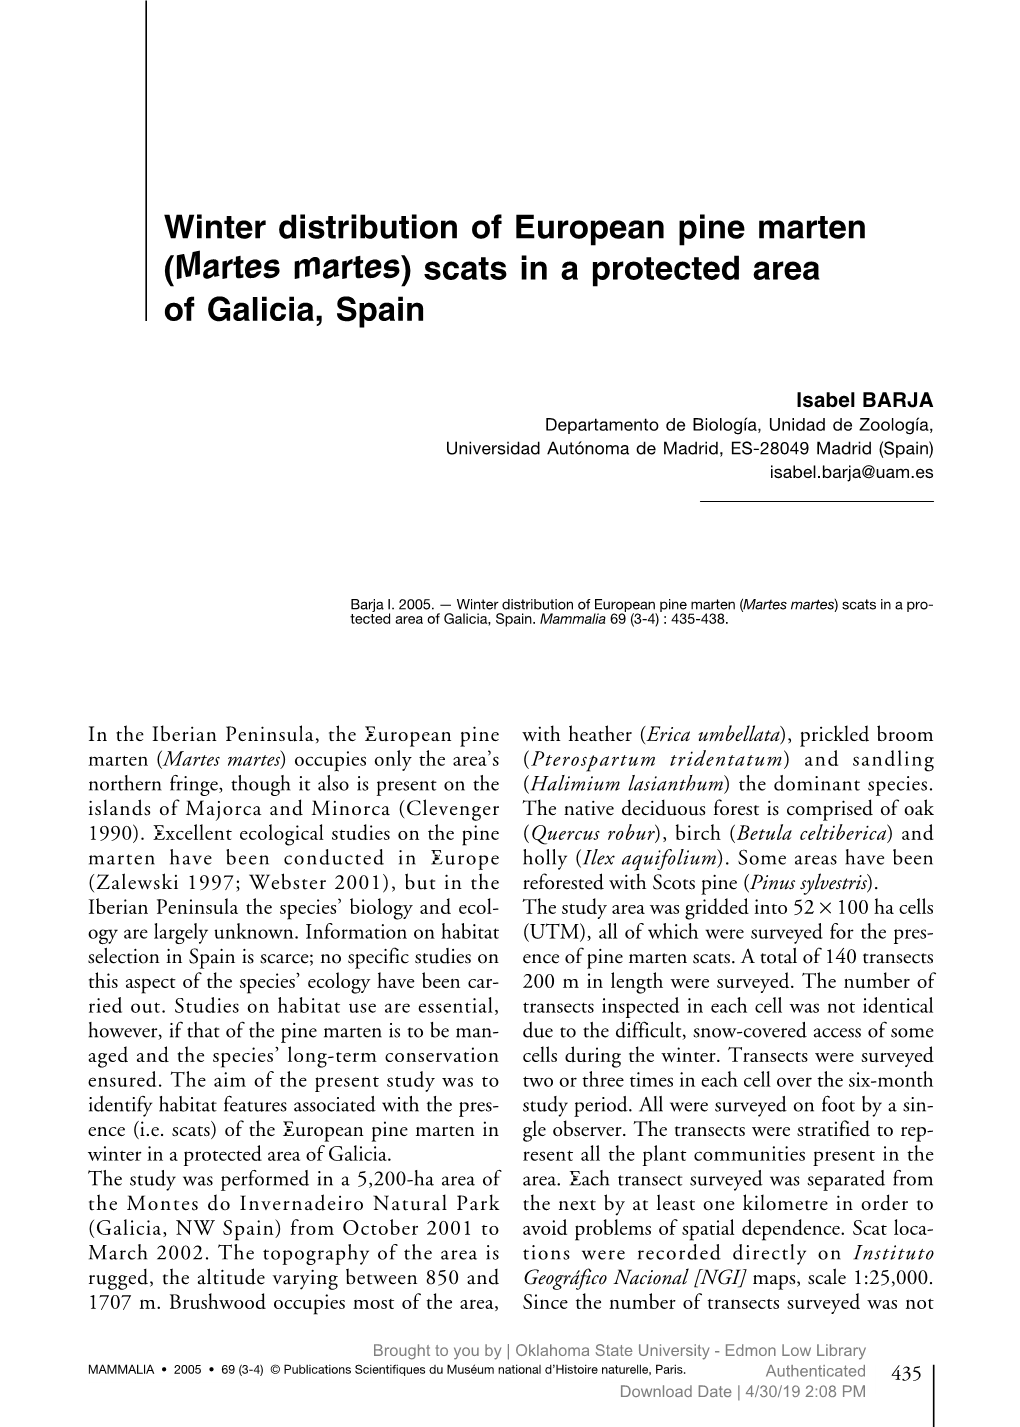 Barja 2005 Winter Distribution of European Pine Marten Scats in A